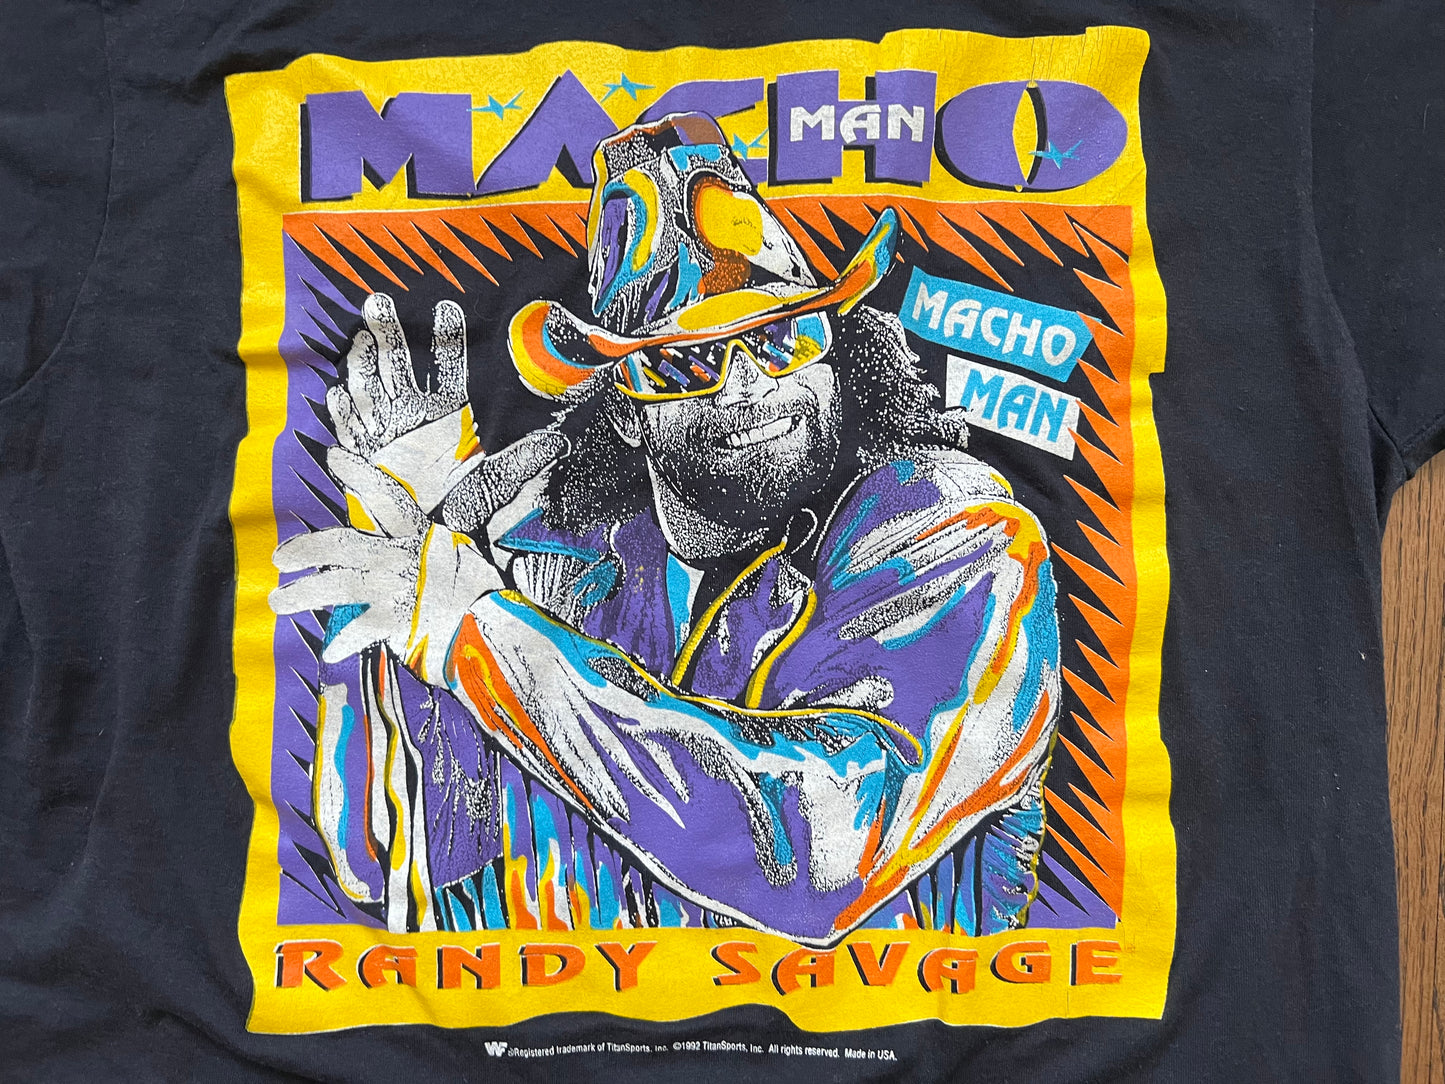 1991 WWF “Macho Man” Randy Savage shirt